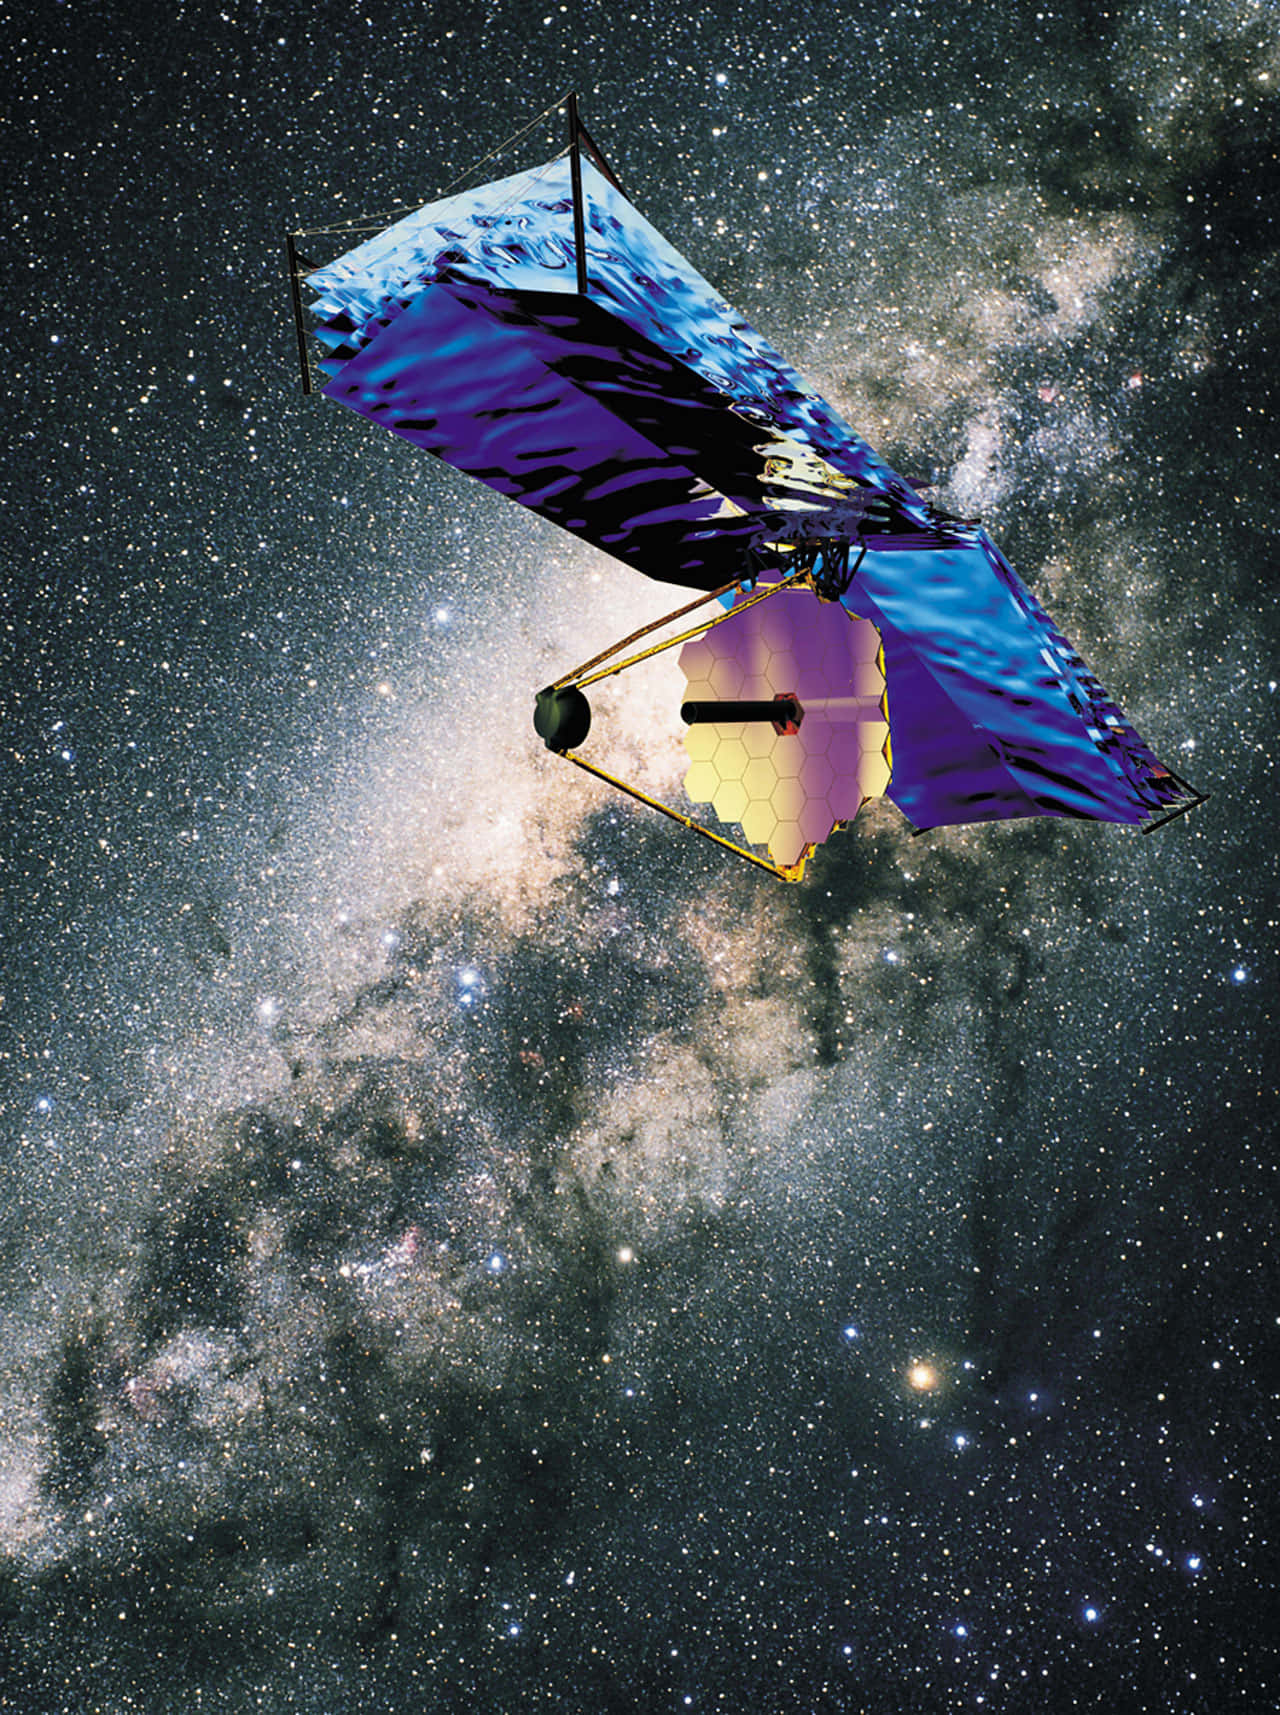 Forskellige fantastiske billed af James Webb-teleskopet